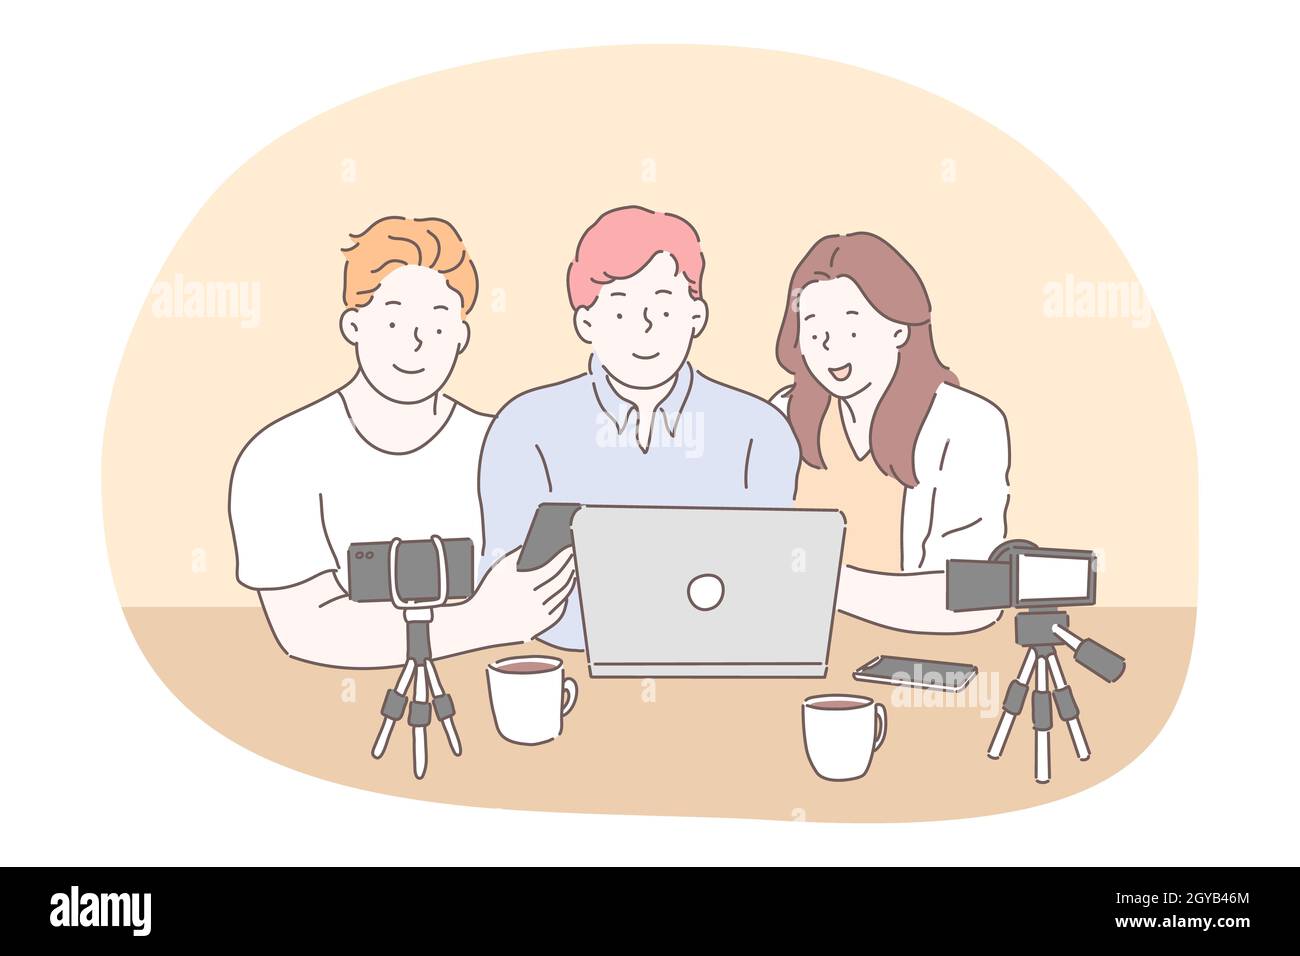 Blog, vlogging, partage de contenu vidéo en ligne concept. Des personnages de dessin animé pour adolescents, garçons et filles, assis avec des appareils photo pour smartphone sur des trépieds et un ordinateur portable Banque D'Images